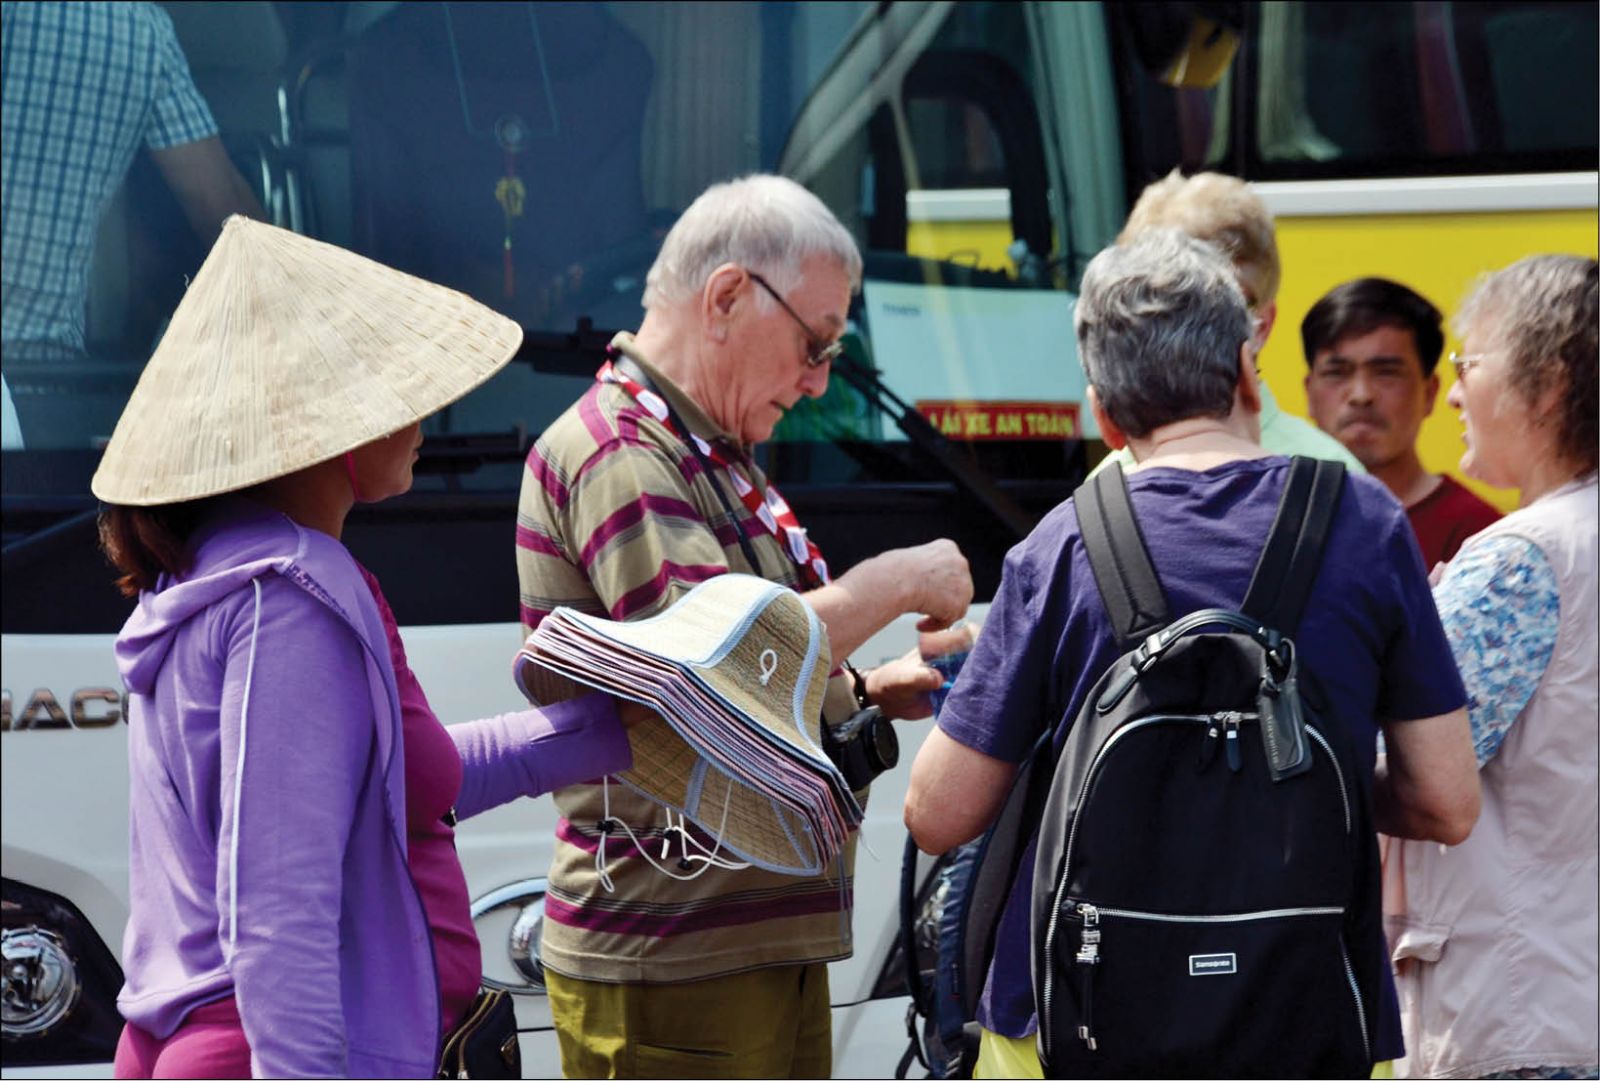 Ngành du lịch đang phục hồi với nhiều tín hiệu lạc quan, nhưng những biểu hiện xấu xí, ''chặt chém'' đang gây bức xúc cho du khách và ảnh hưởng lớn hình ảnh du lịch Việt Nam (Ảnh minh họa - Báo TT Huế)